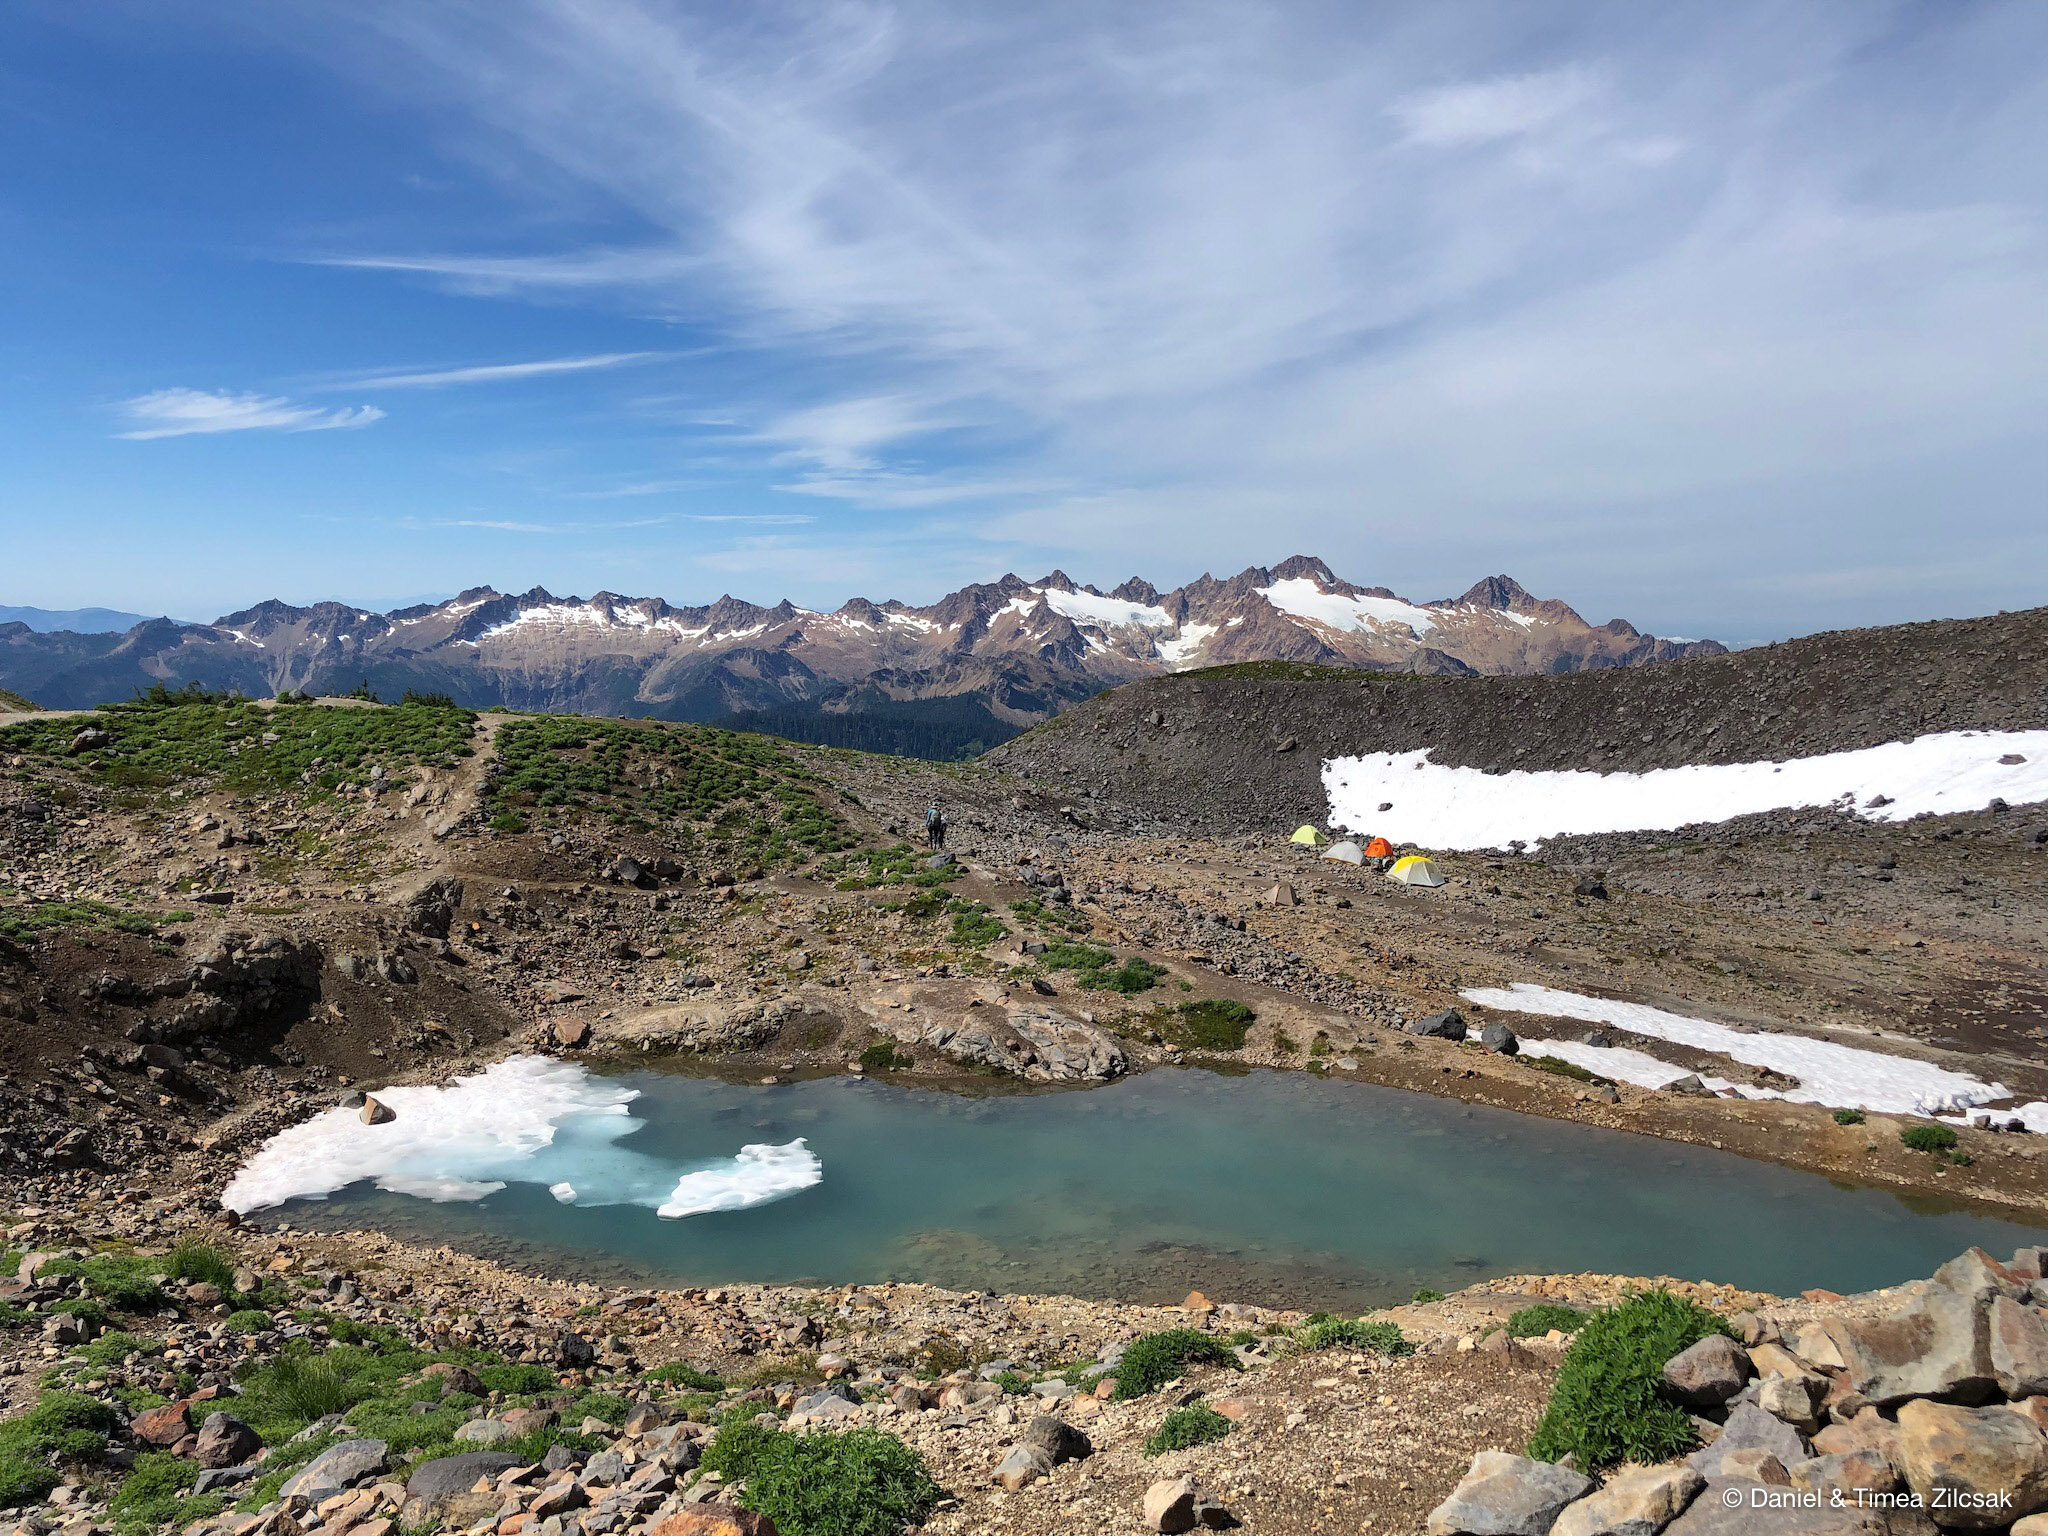 Mount Baker - Easton Glacier climber's base camp